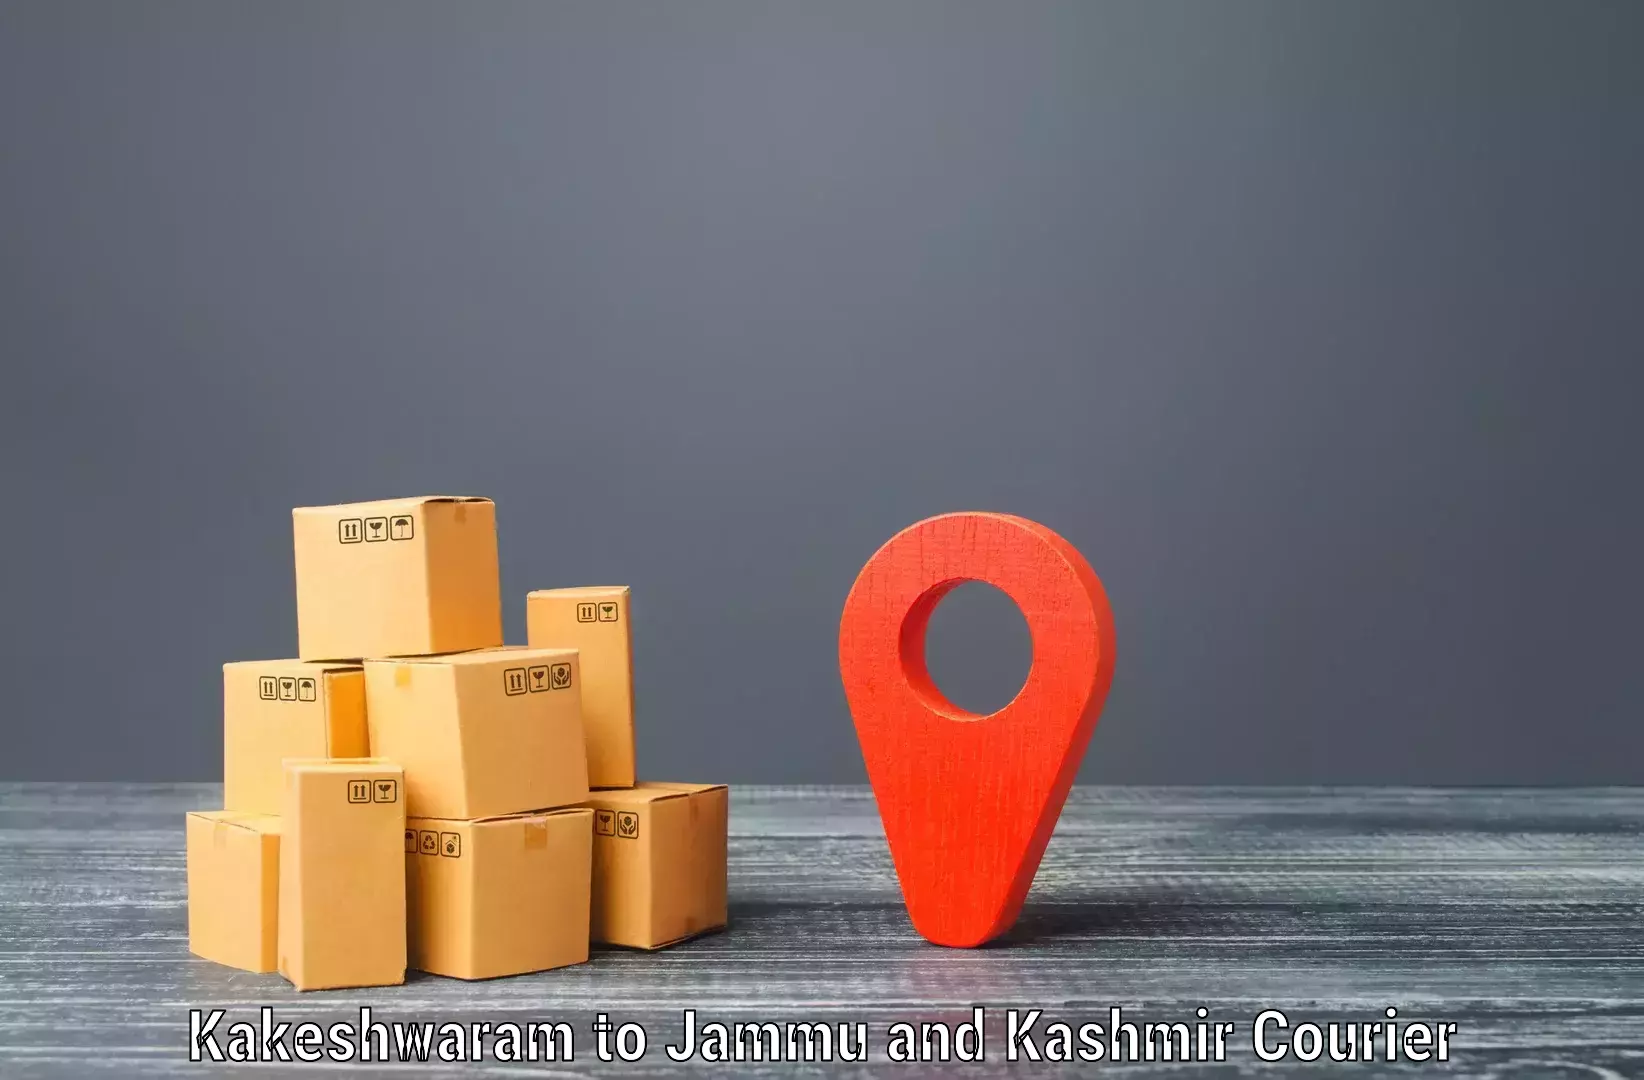 Modern delivery methods Kakeshwaram to Kishtwar